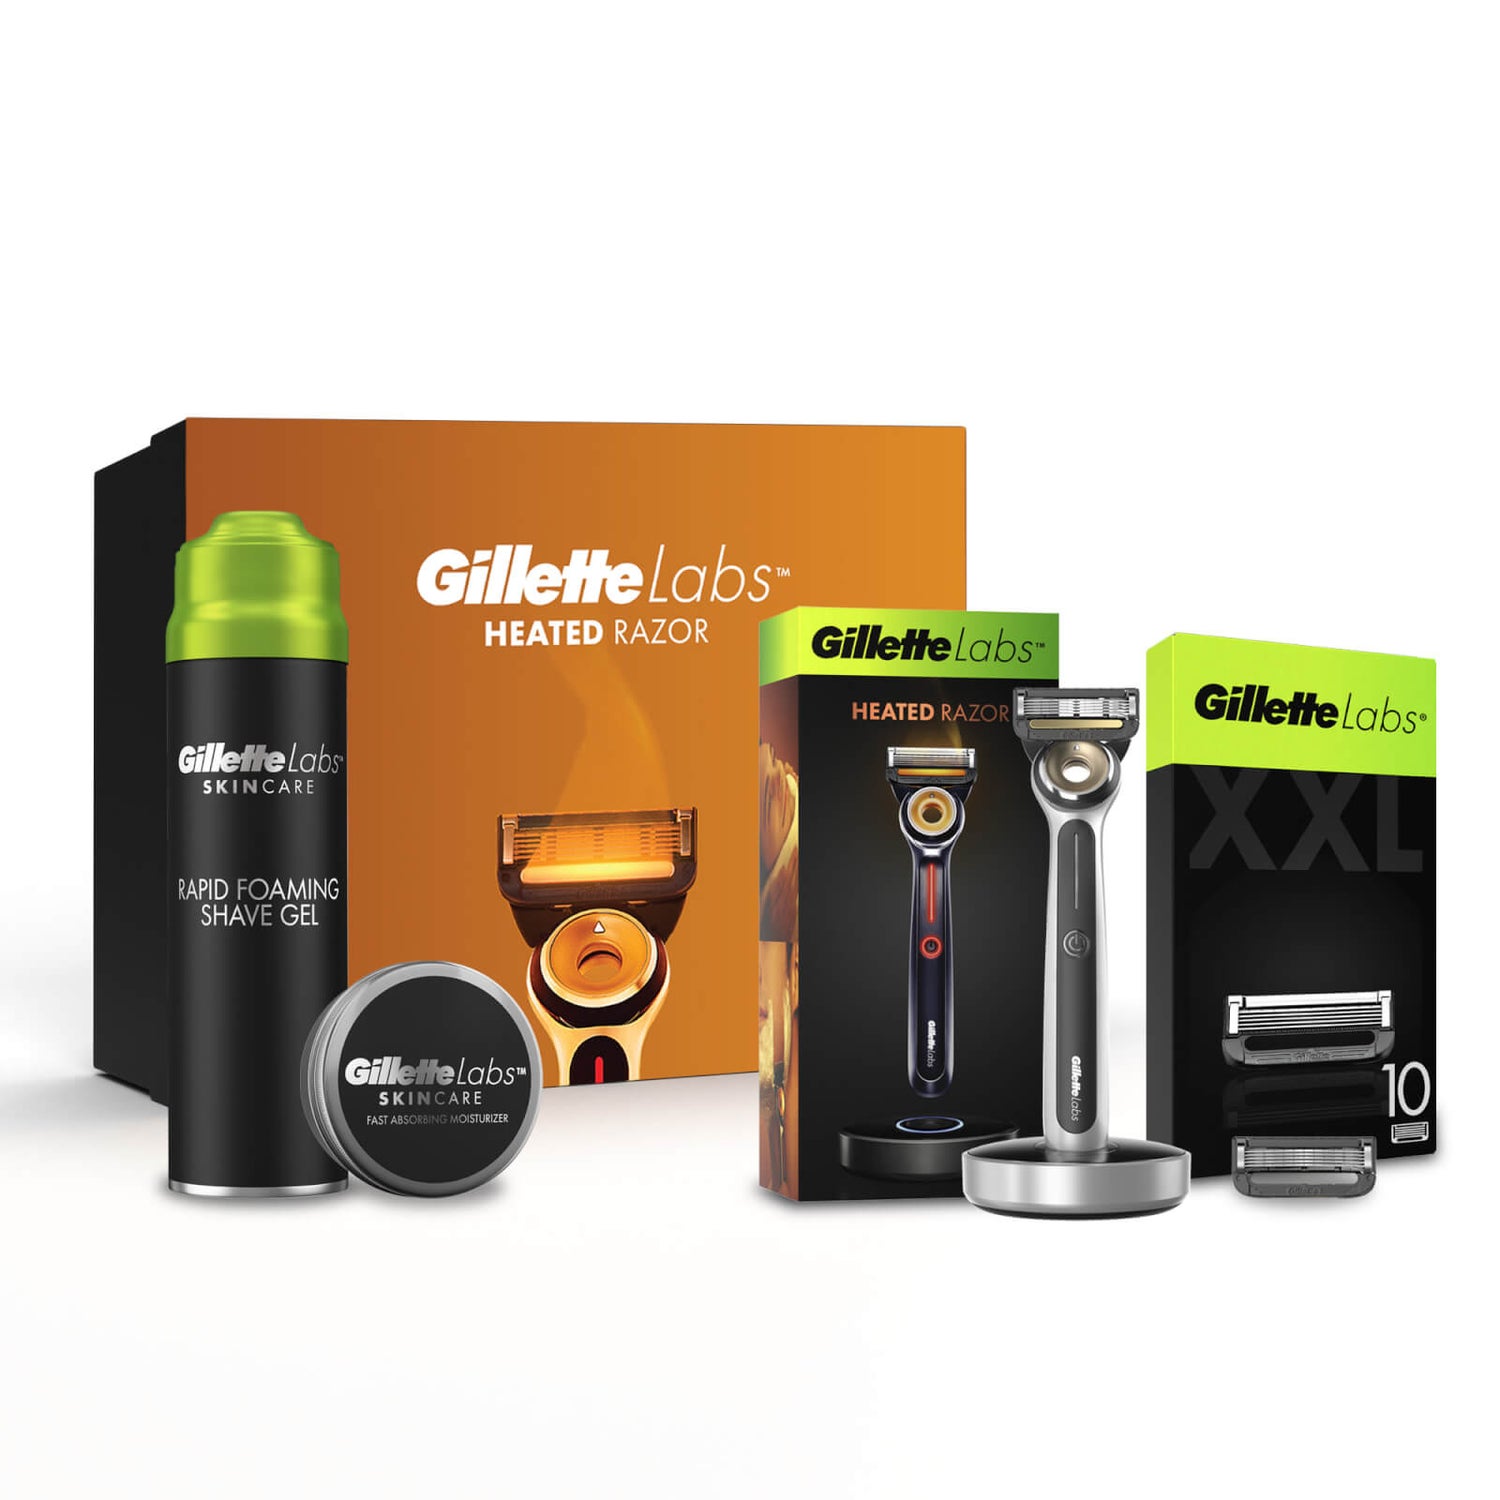 Gillette Labs Heated Razor Starter Essentials Giftset